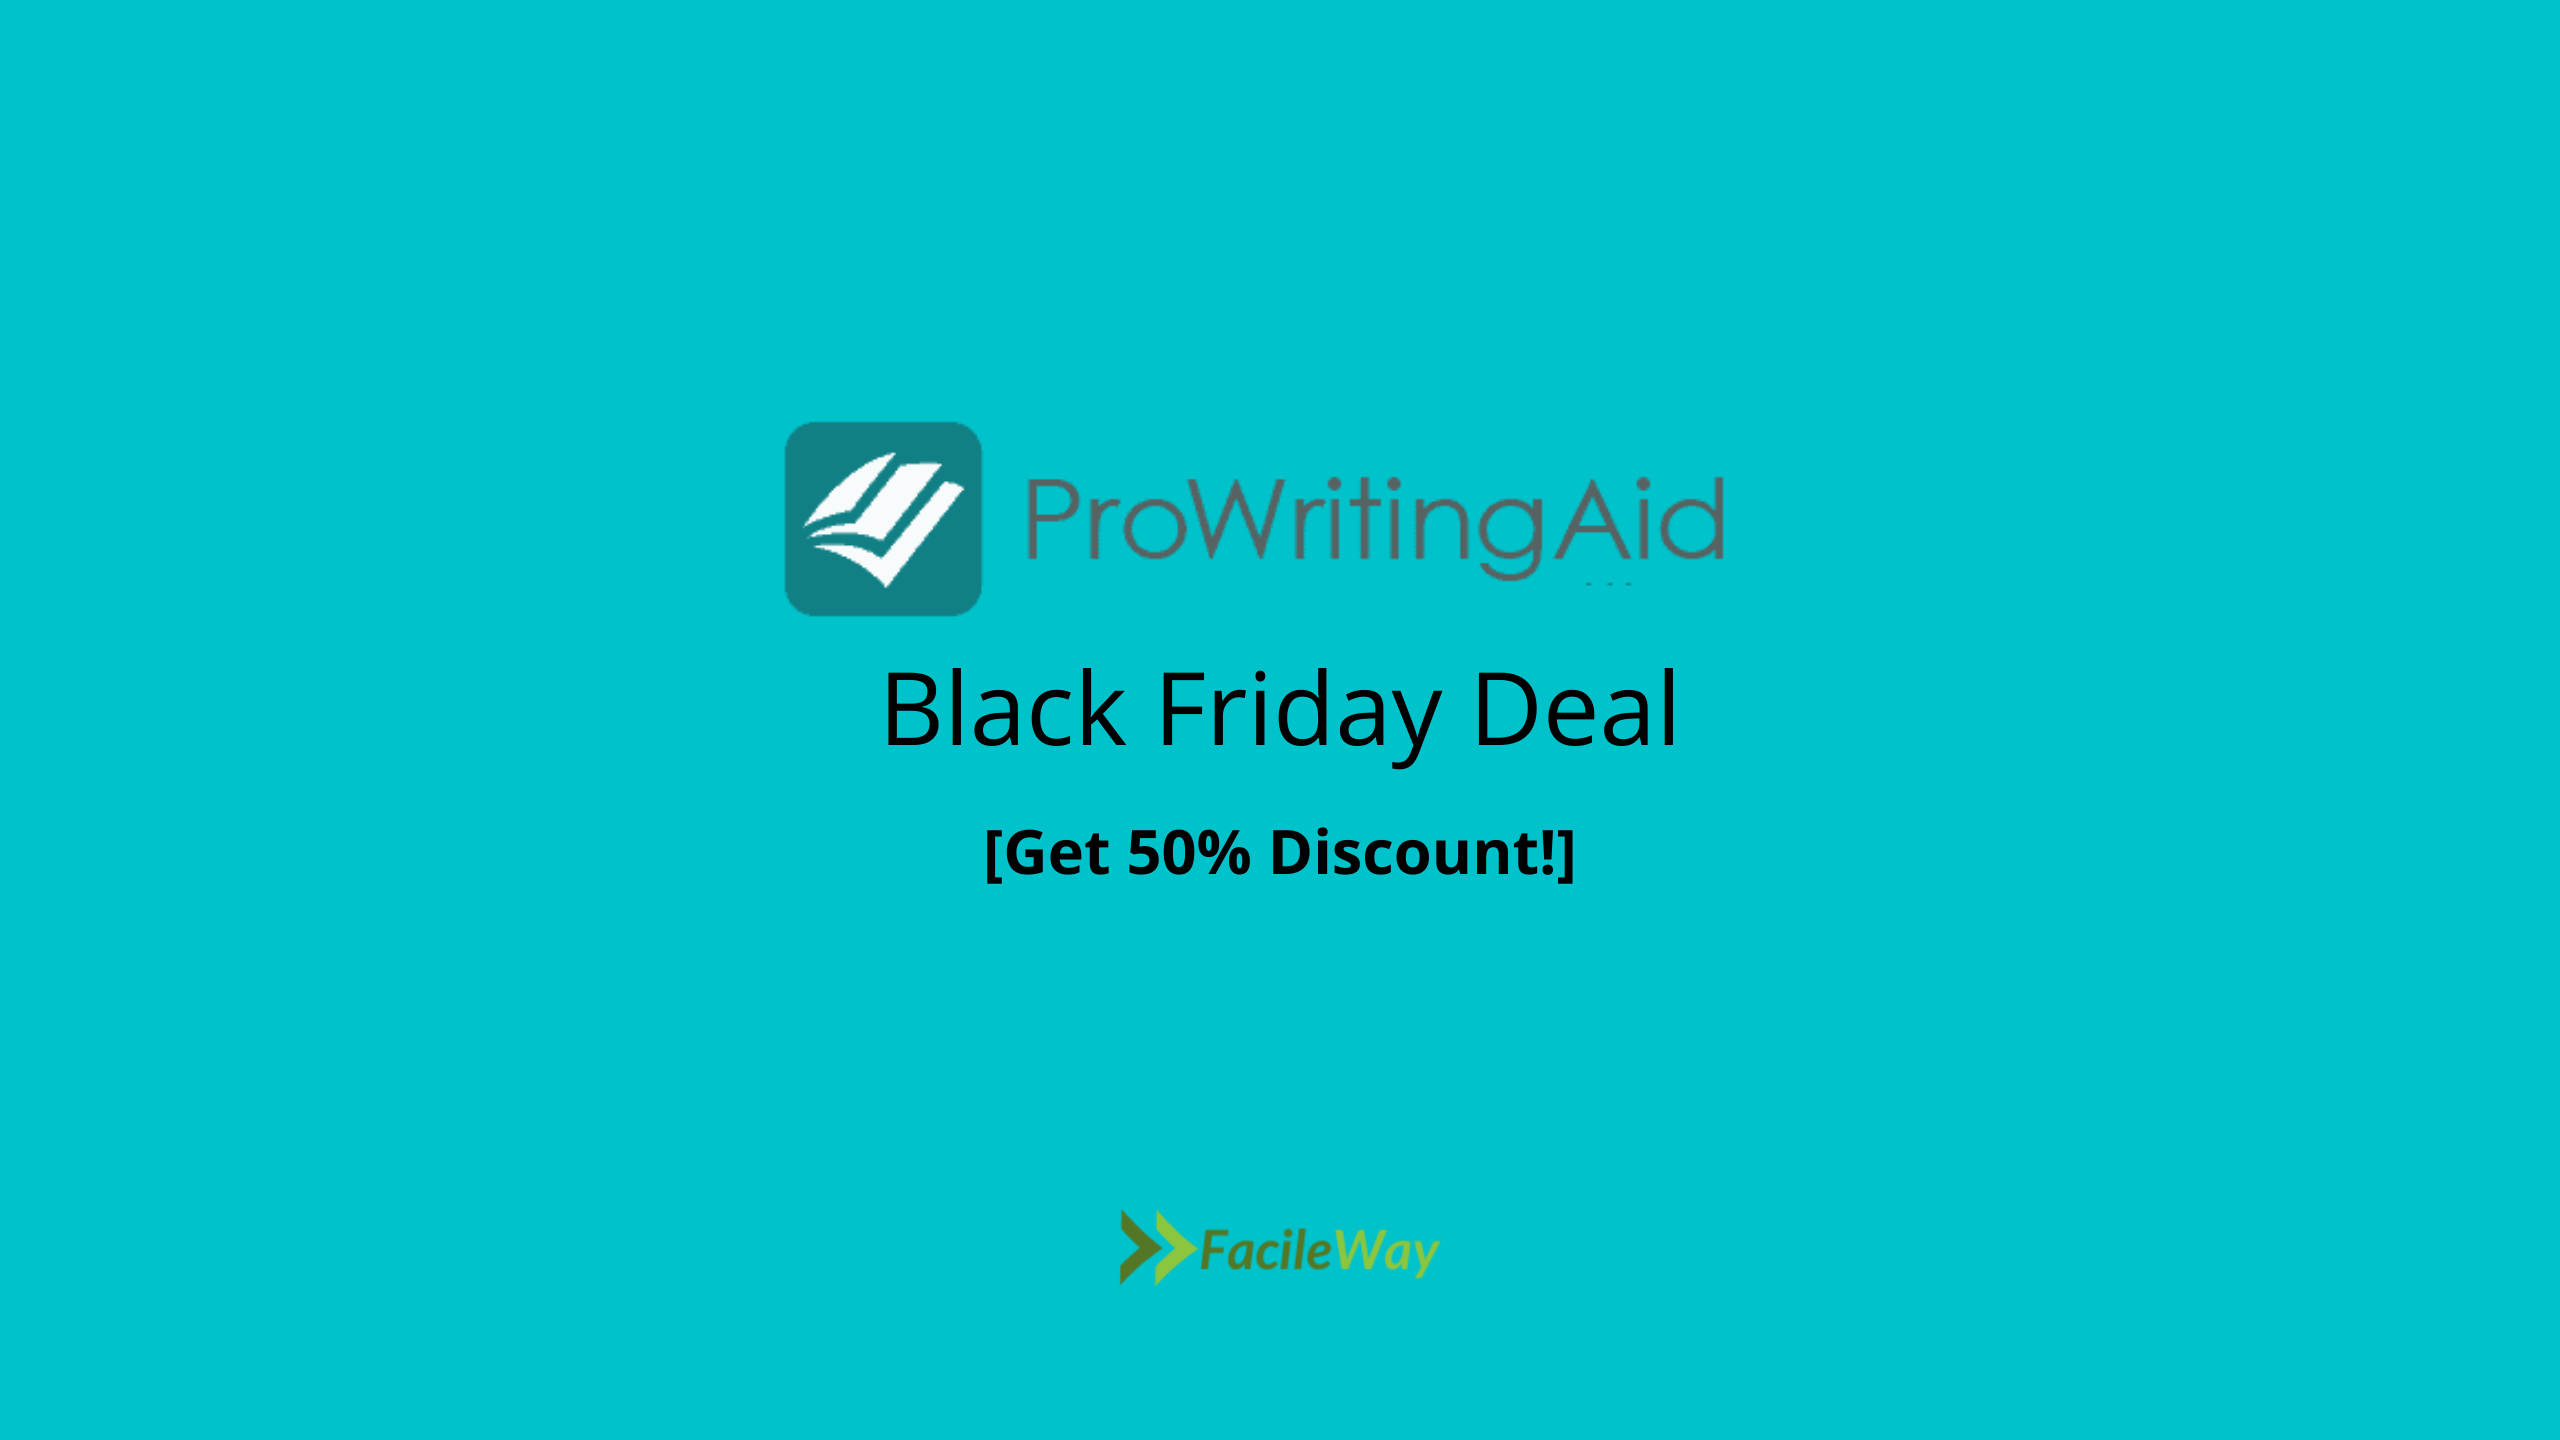 ProWritingAid Black Friday Deal